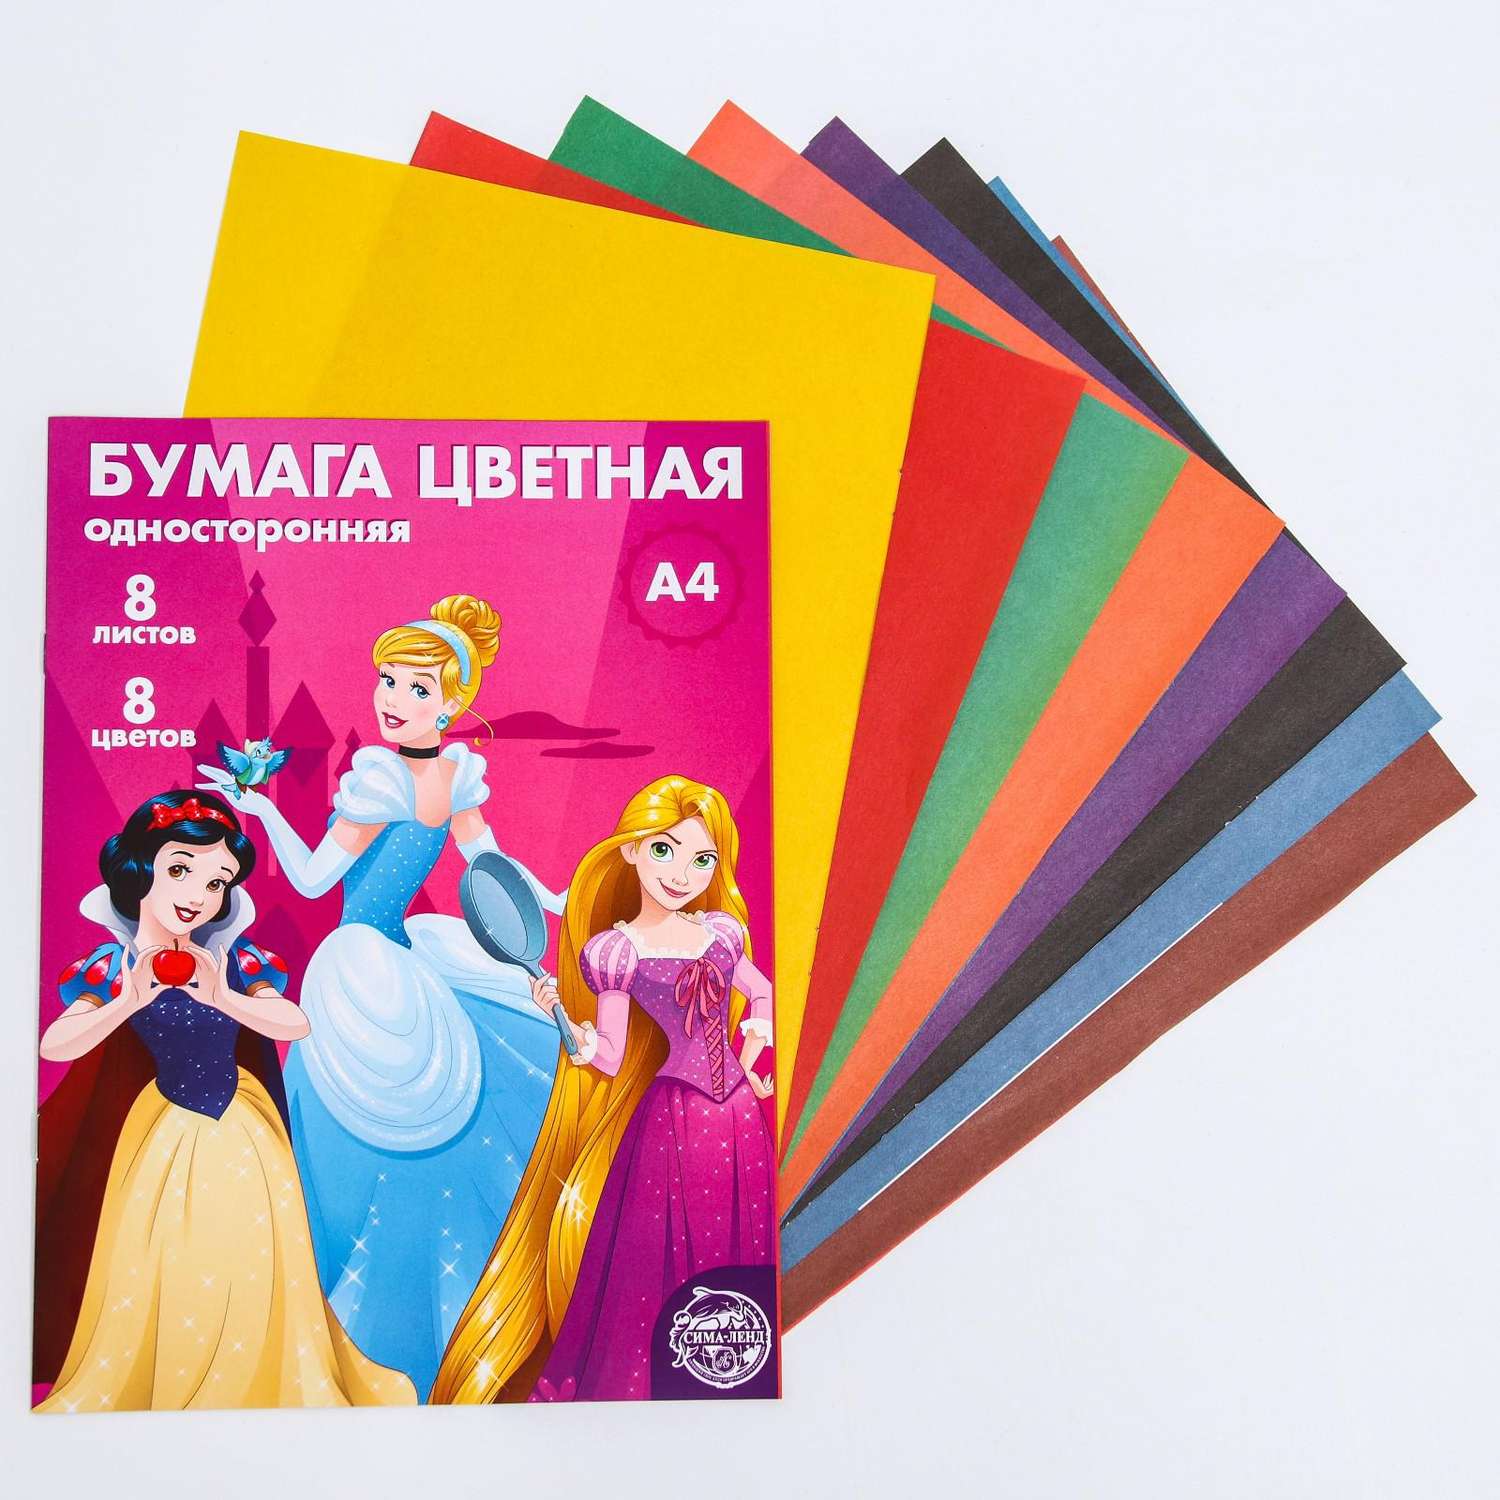 Бумага цветная Disney «Принцессы Дисней» односторонняя А4 8 листов - фото 2